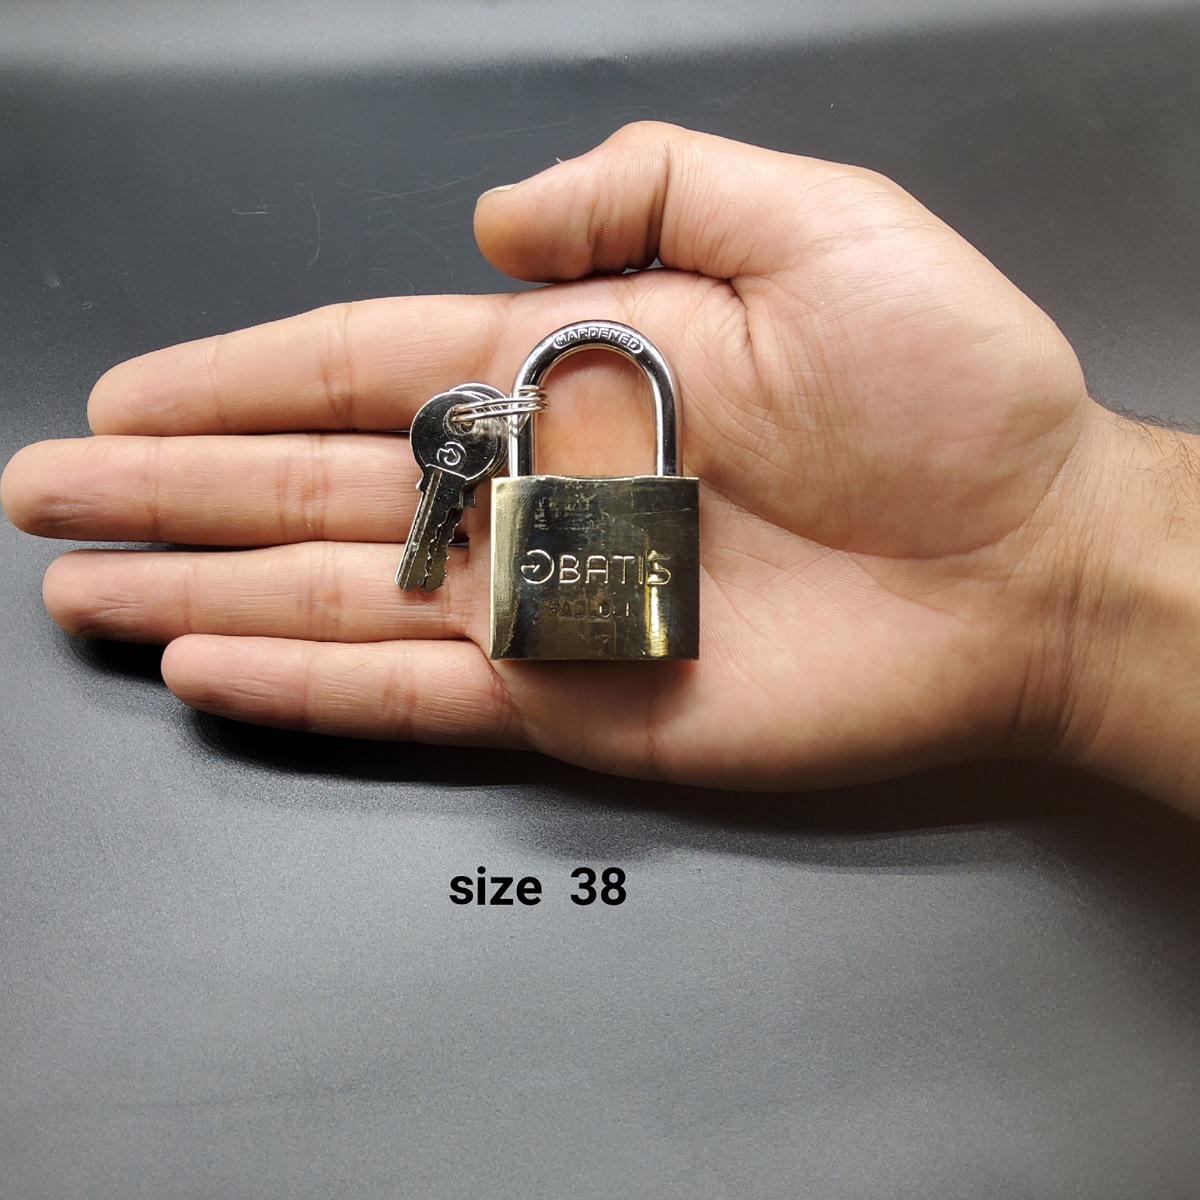 قفل آویز باتیس مدل  38BA40001 بسته  6 عددی